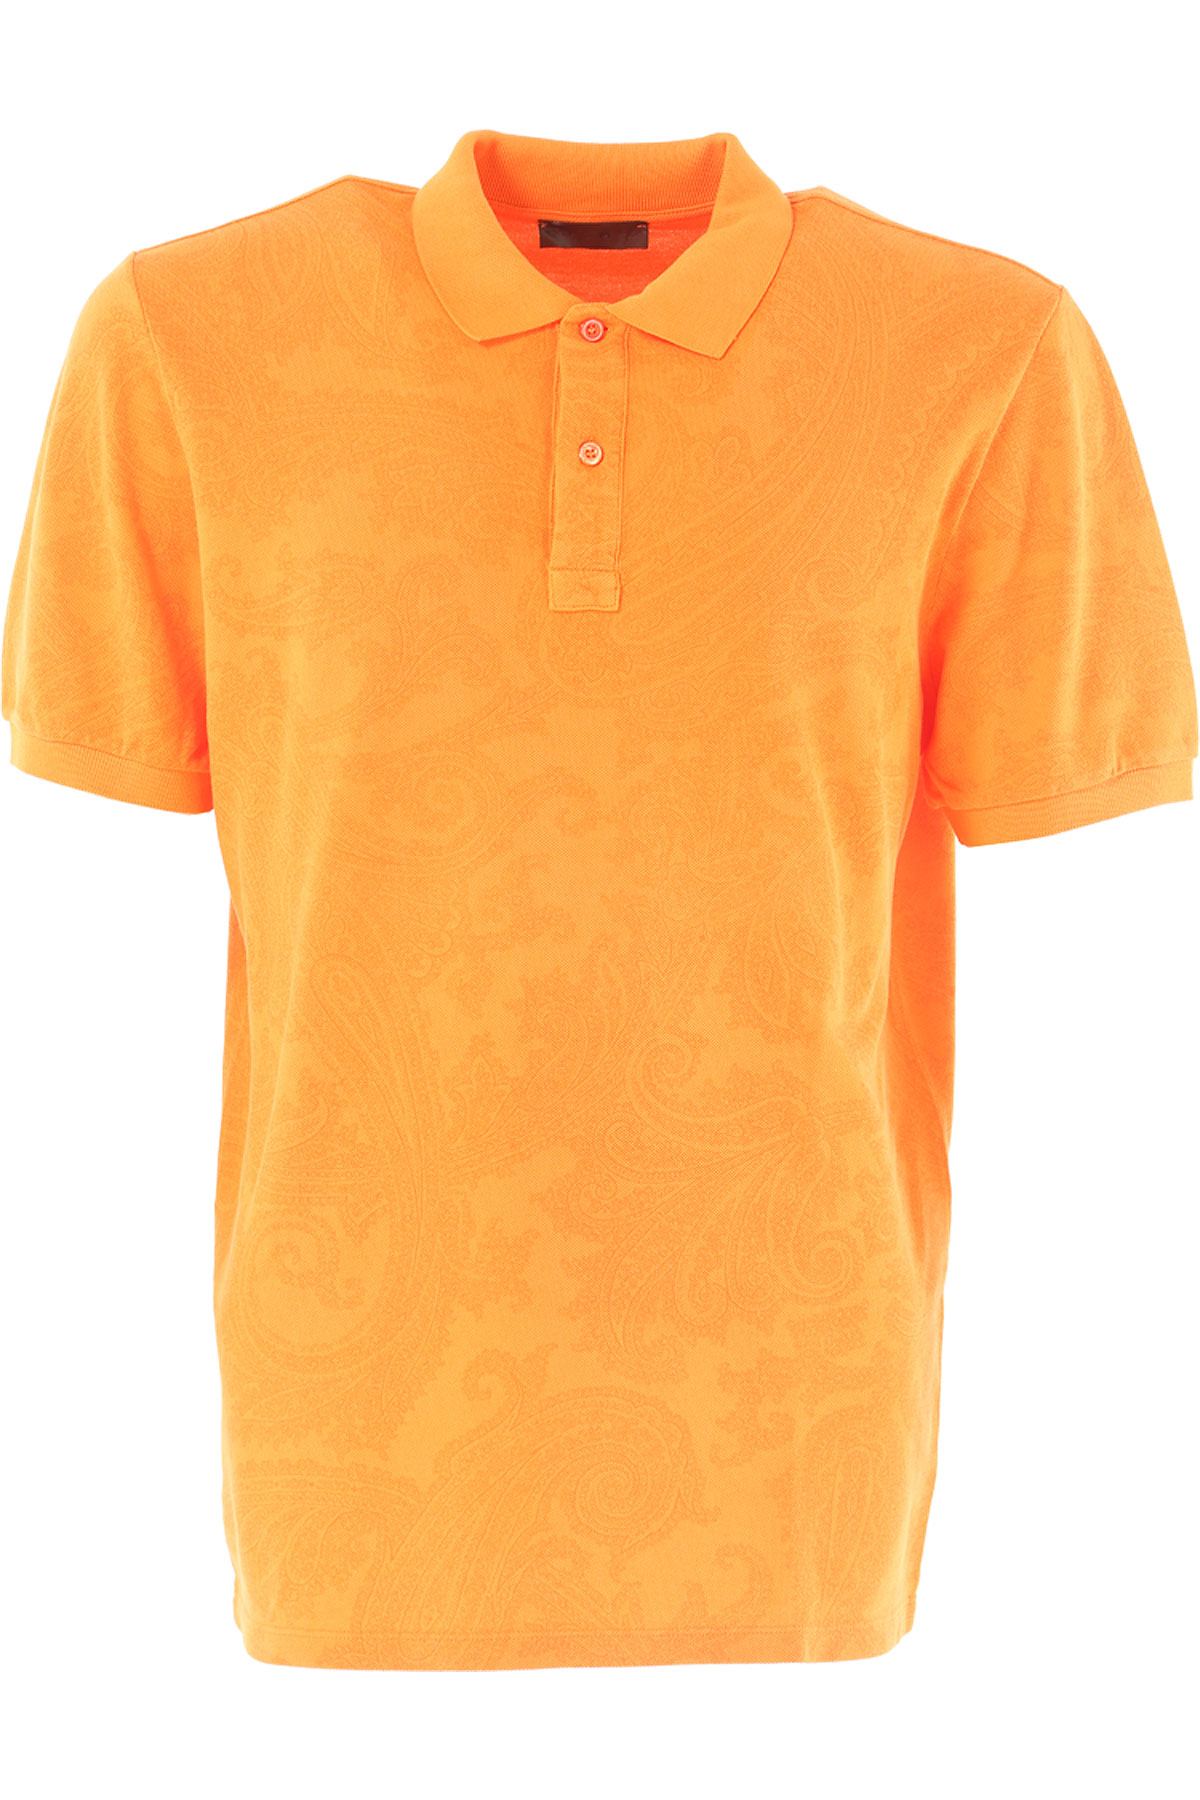 Vêtements Homme Etro Outlet, Orange, Coton, 2017, L M